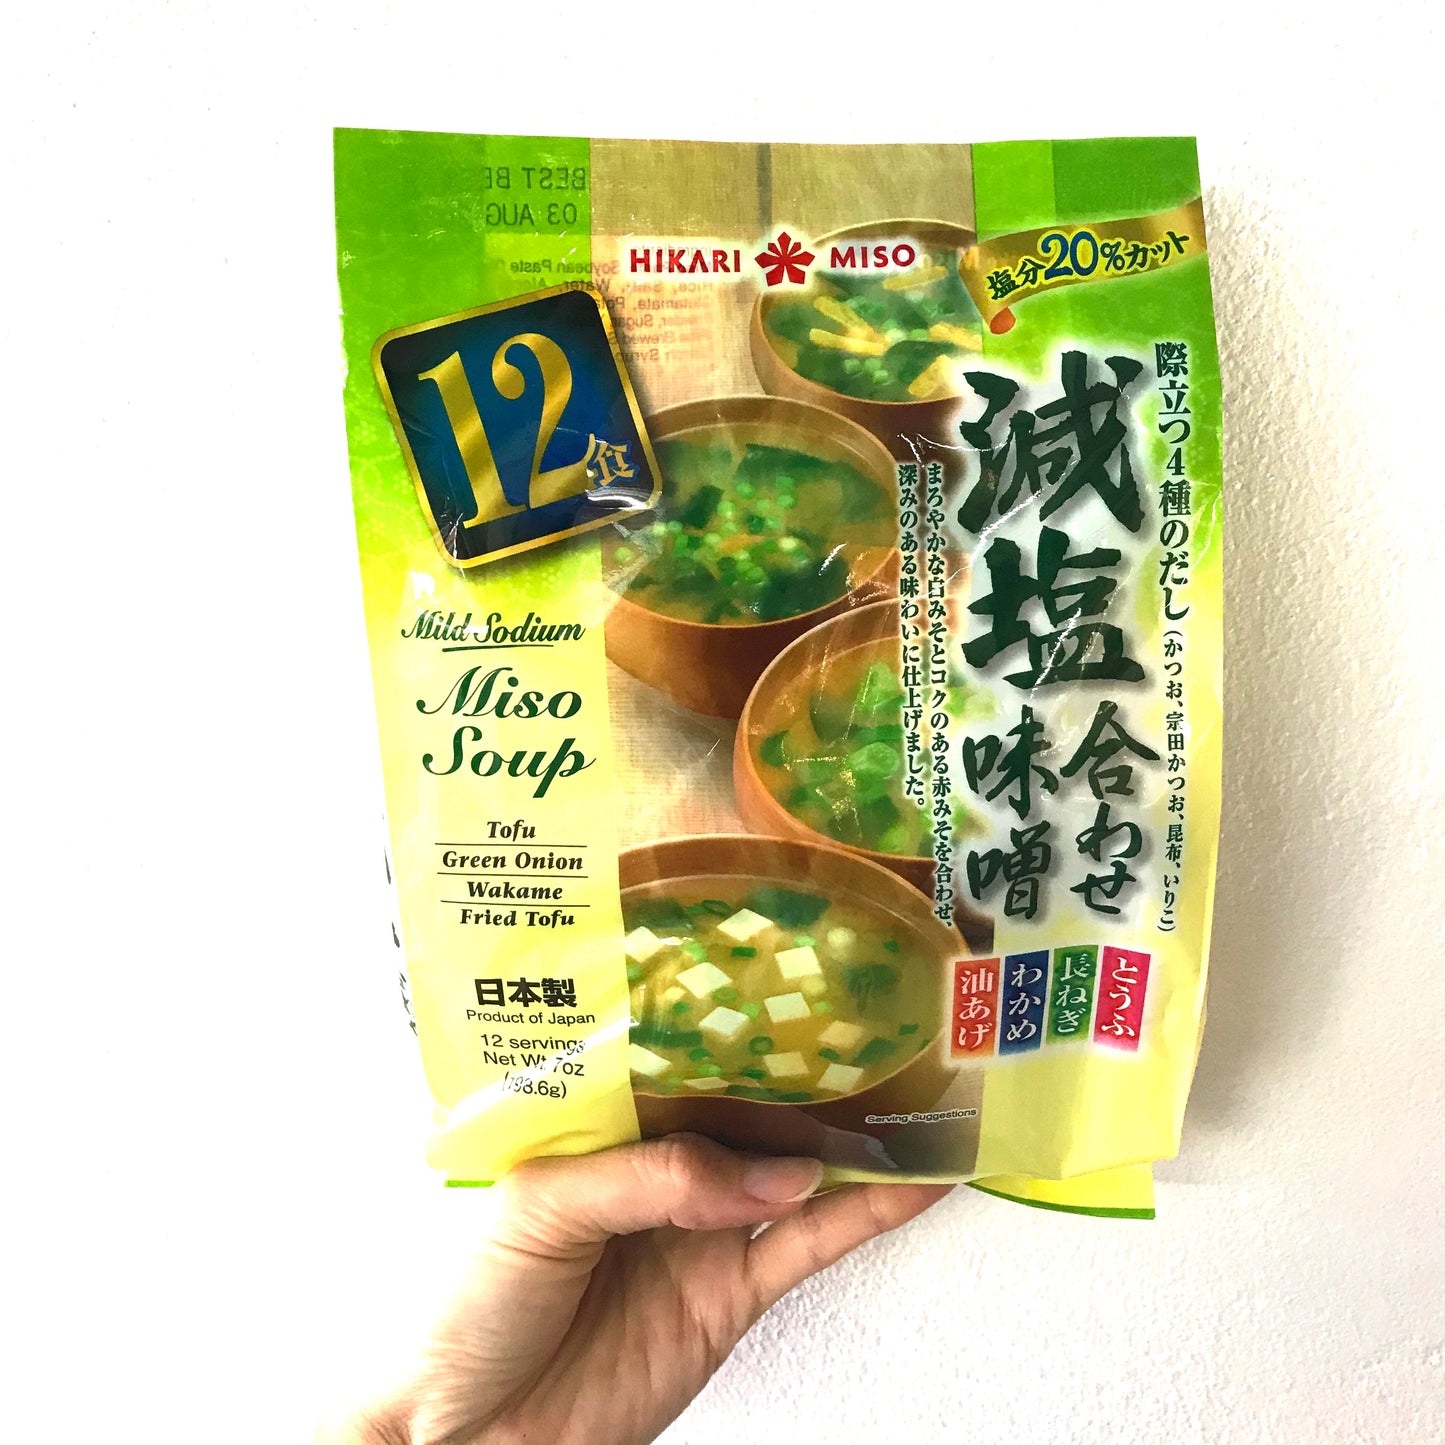 Hikari Instant Mild Sodium Miso Soup 12 servings